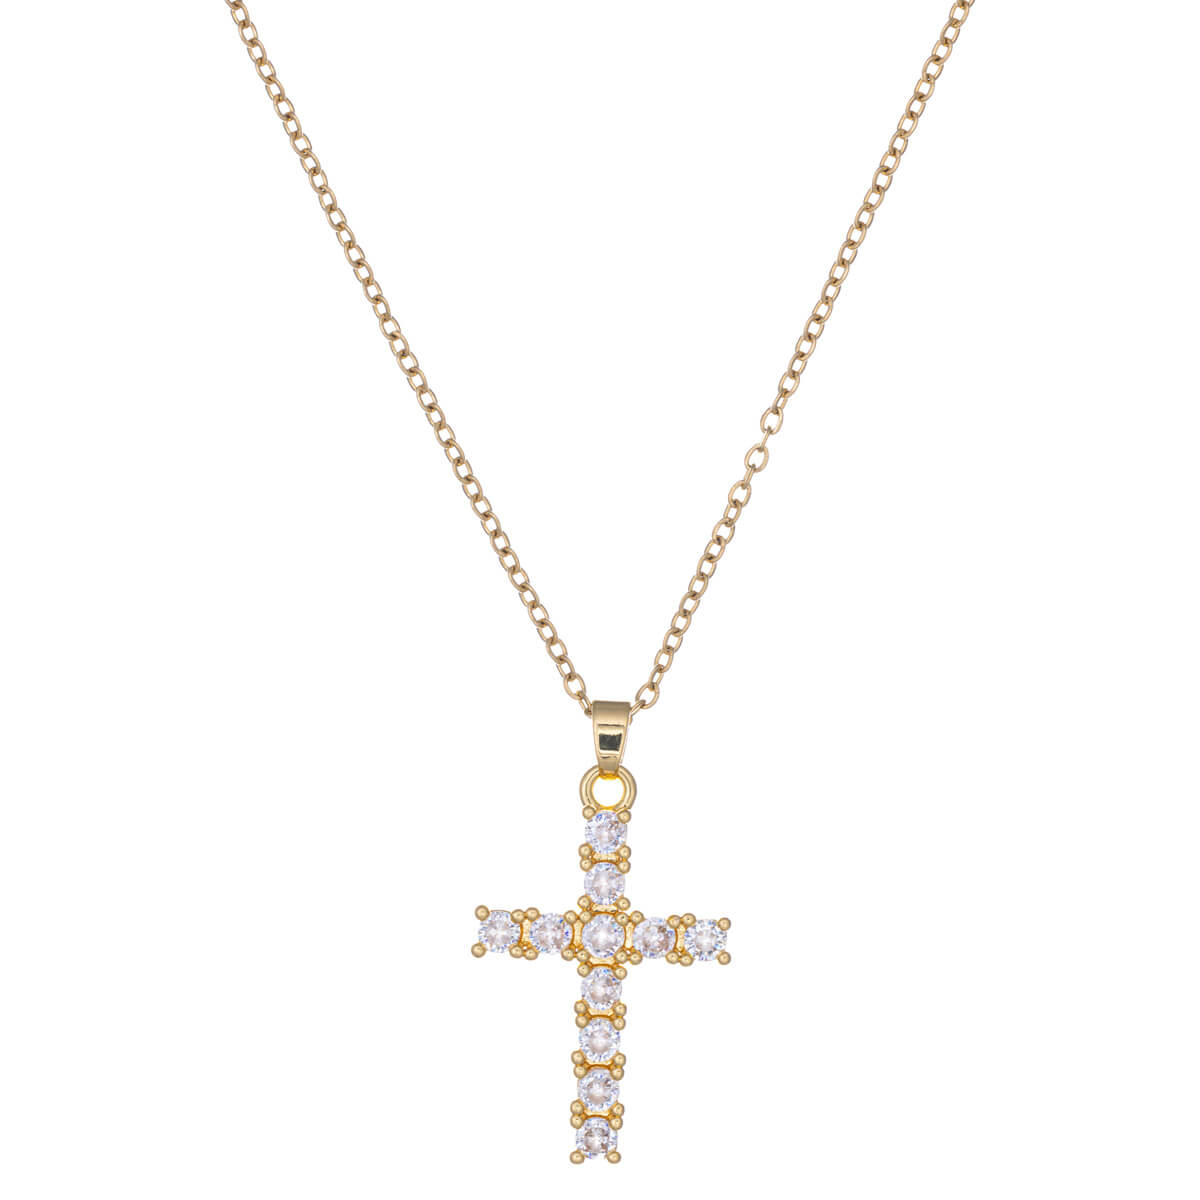 Zirconia cross pendant steel necklace 45cm (Steel 316L)